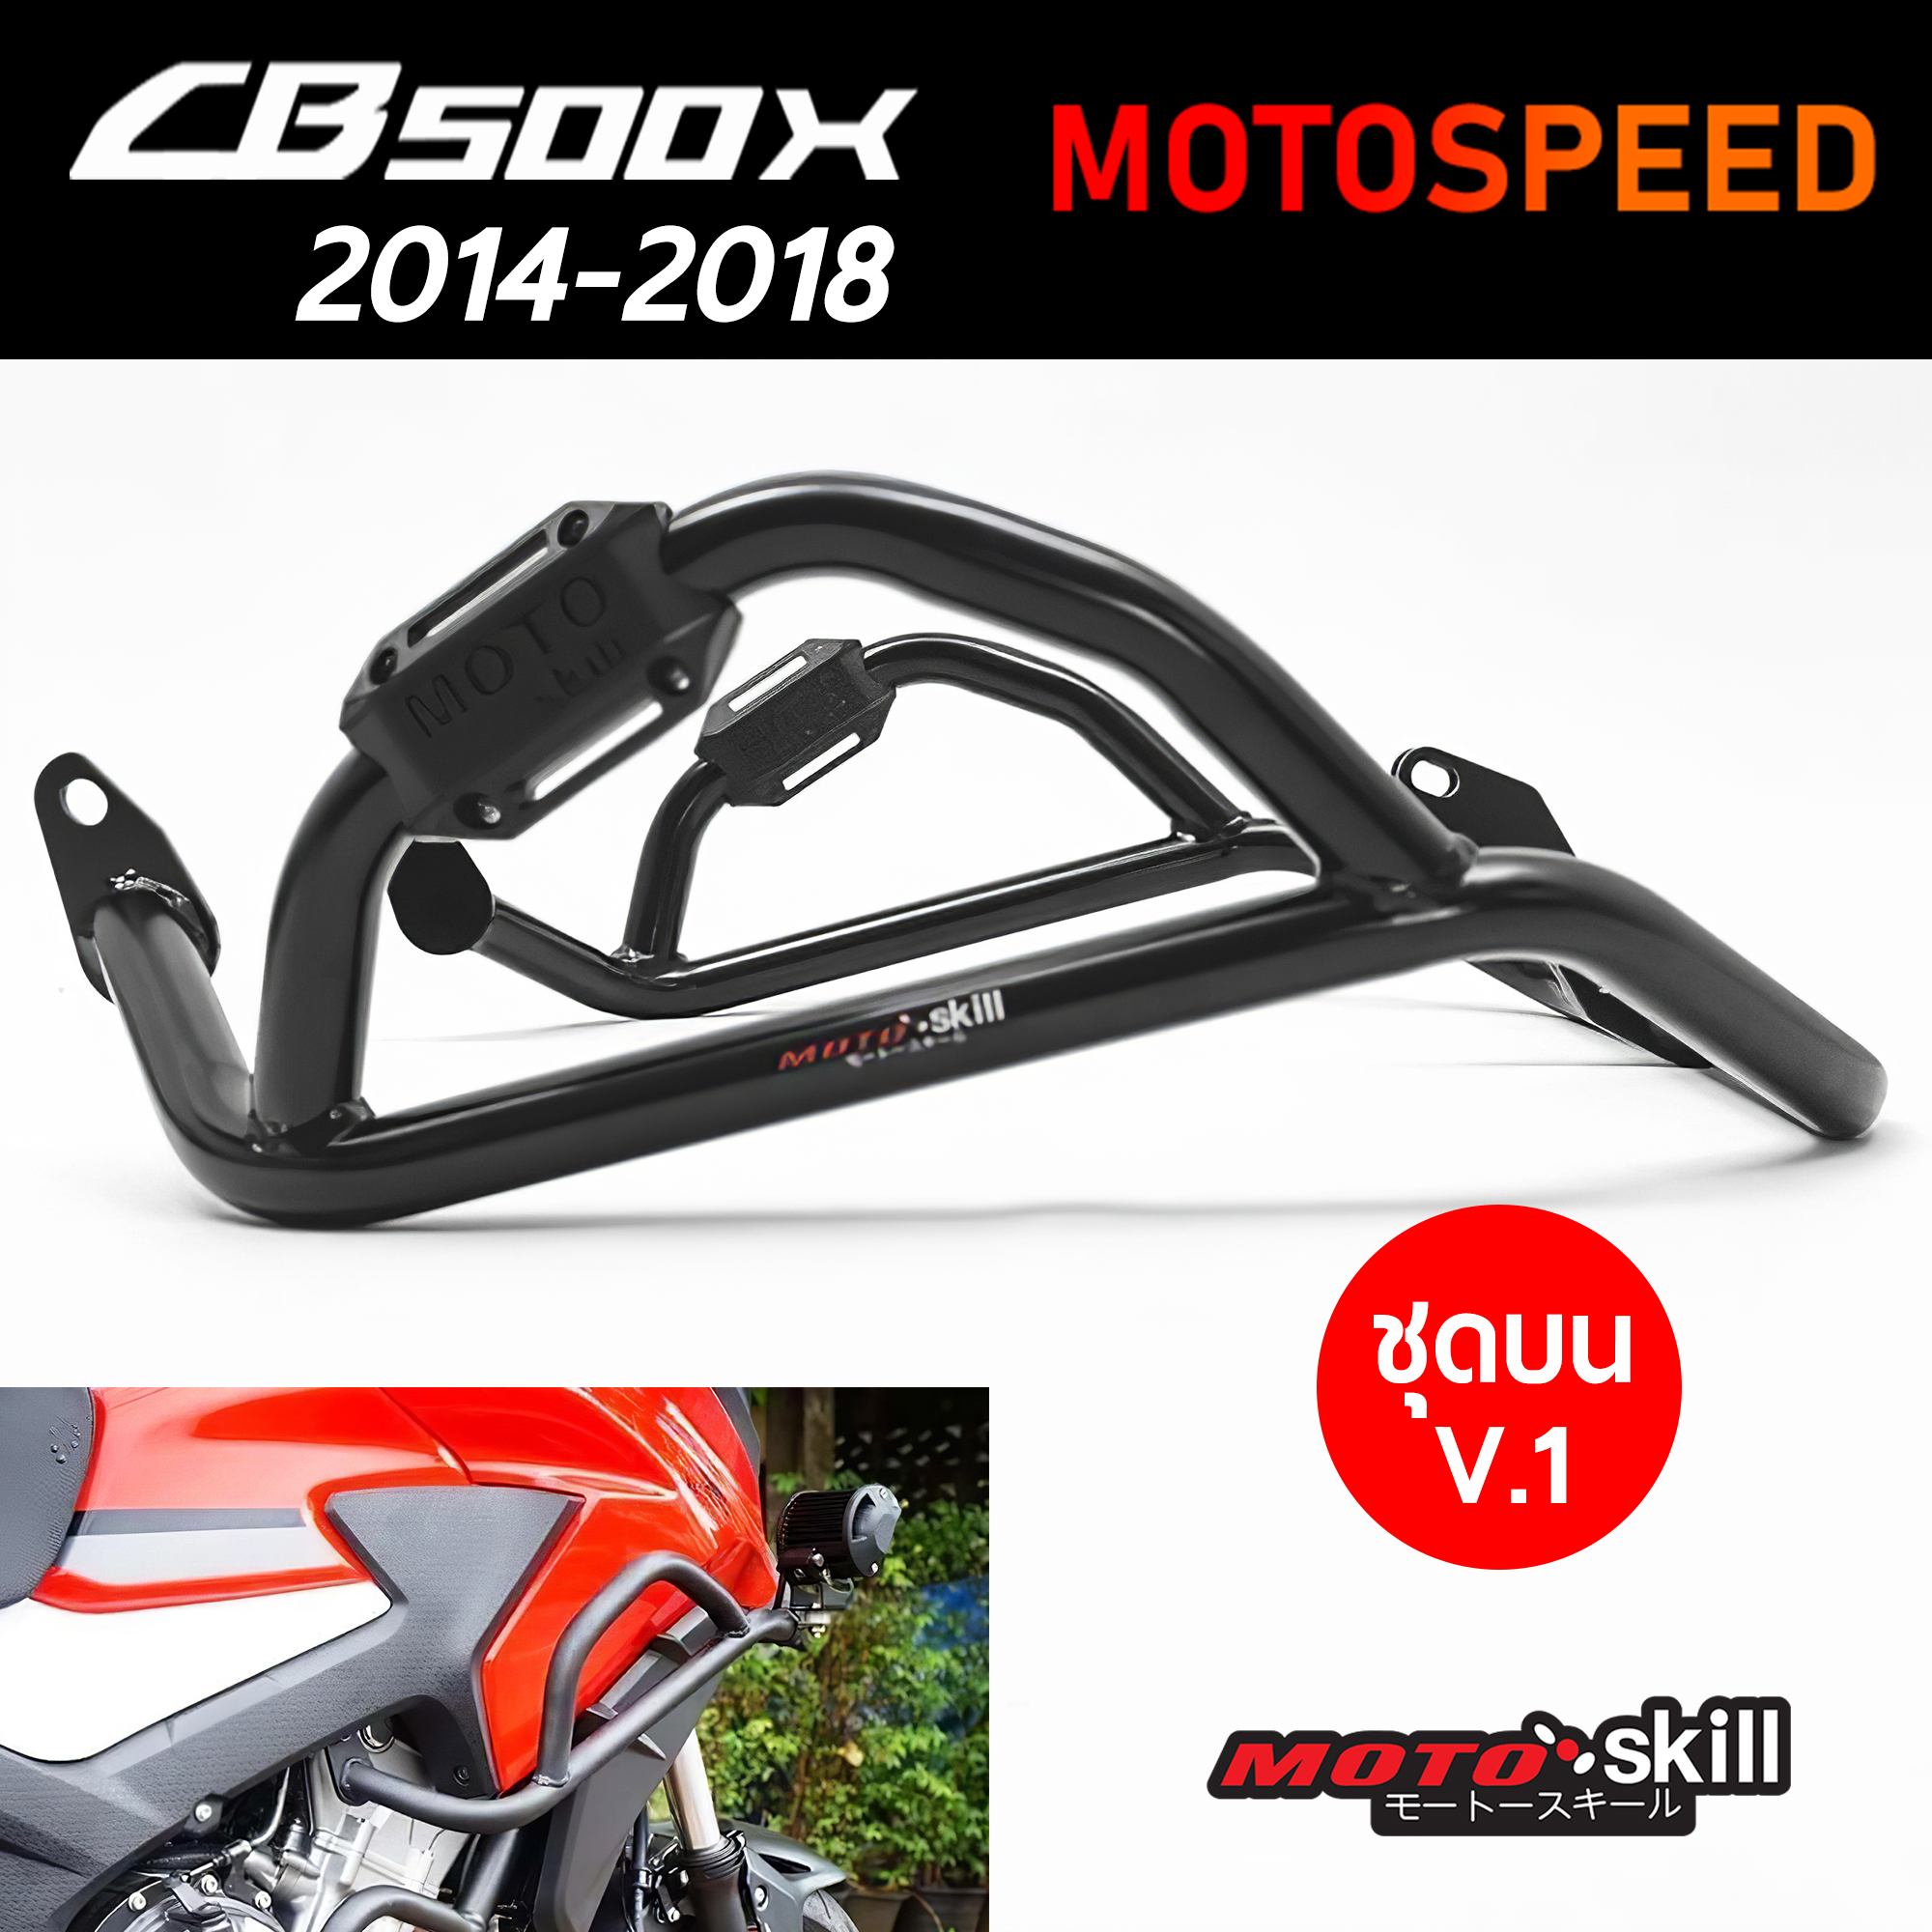 (พรีออเดอร์ 7-14 วัน) กันล้ม แคชบาร์ V.1 ชุดบน Crashbar Honda CB500X ปี 2014-2018 By Motospeed